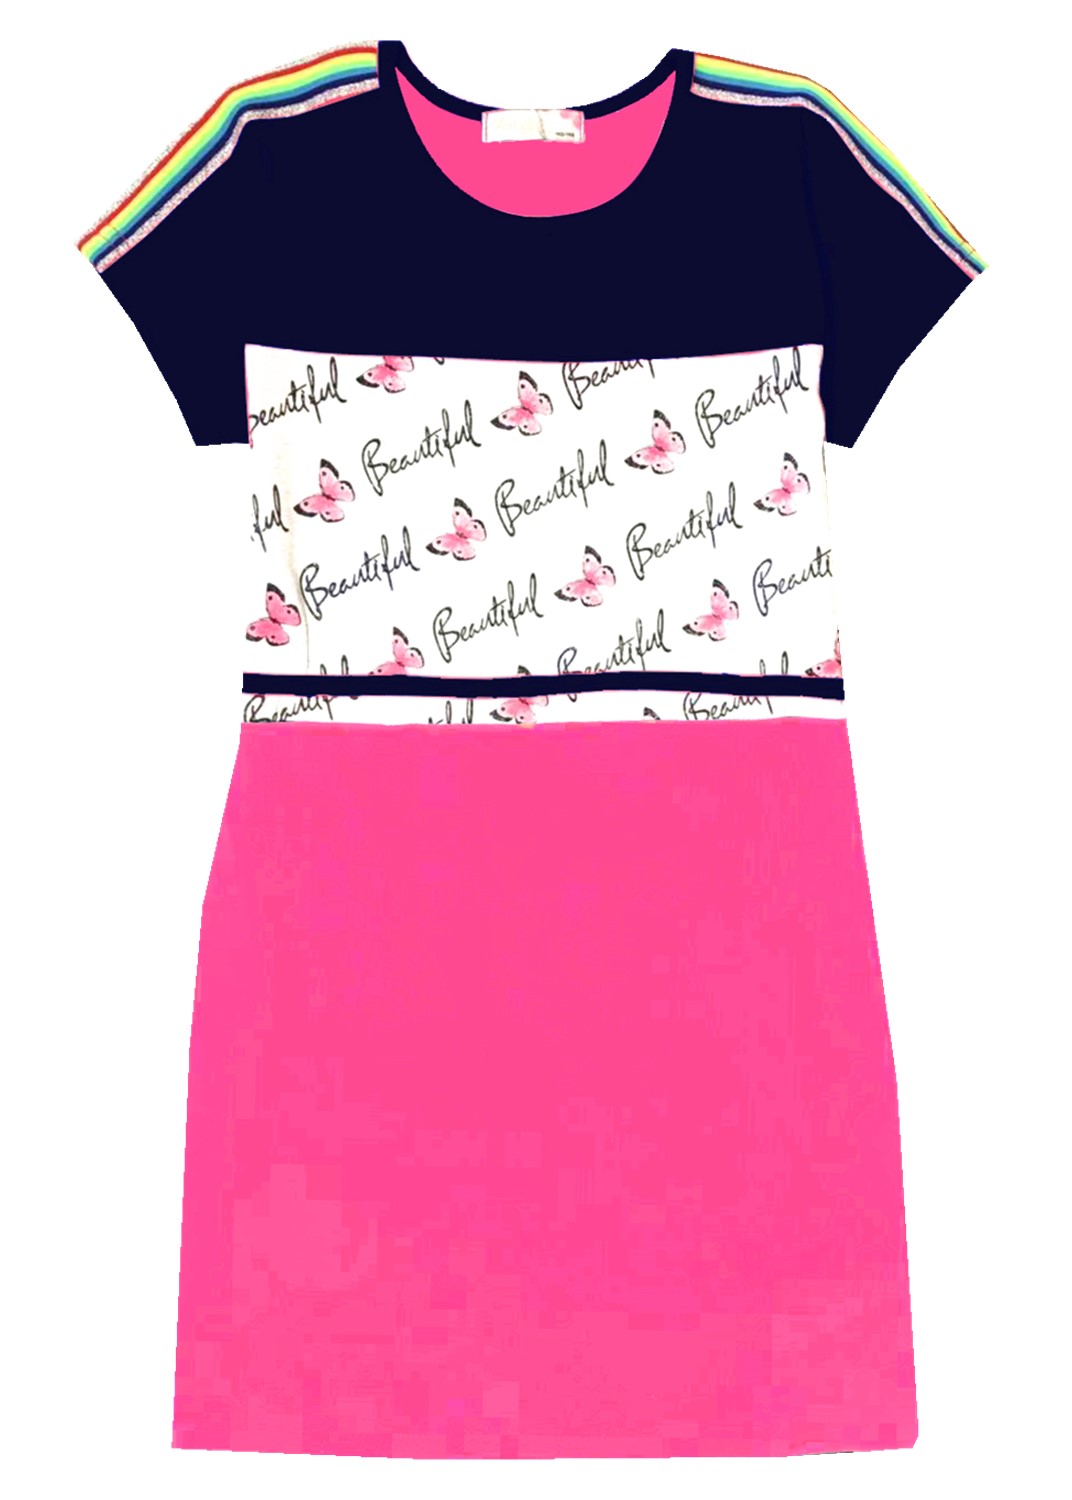 Dívčí šaty - KUGO K901, vel.134-164 Barva: Vzor 1, Velikost: 140-146